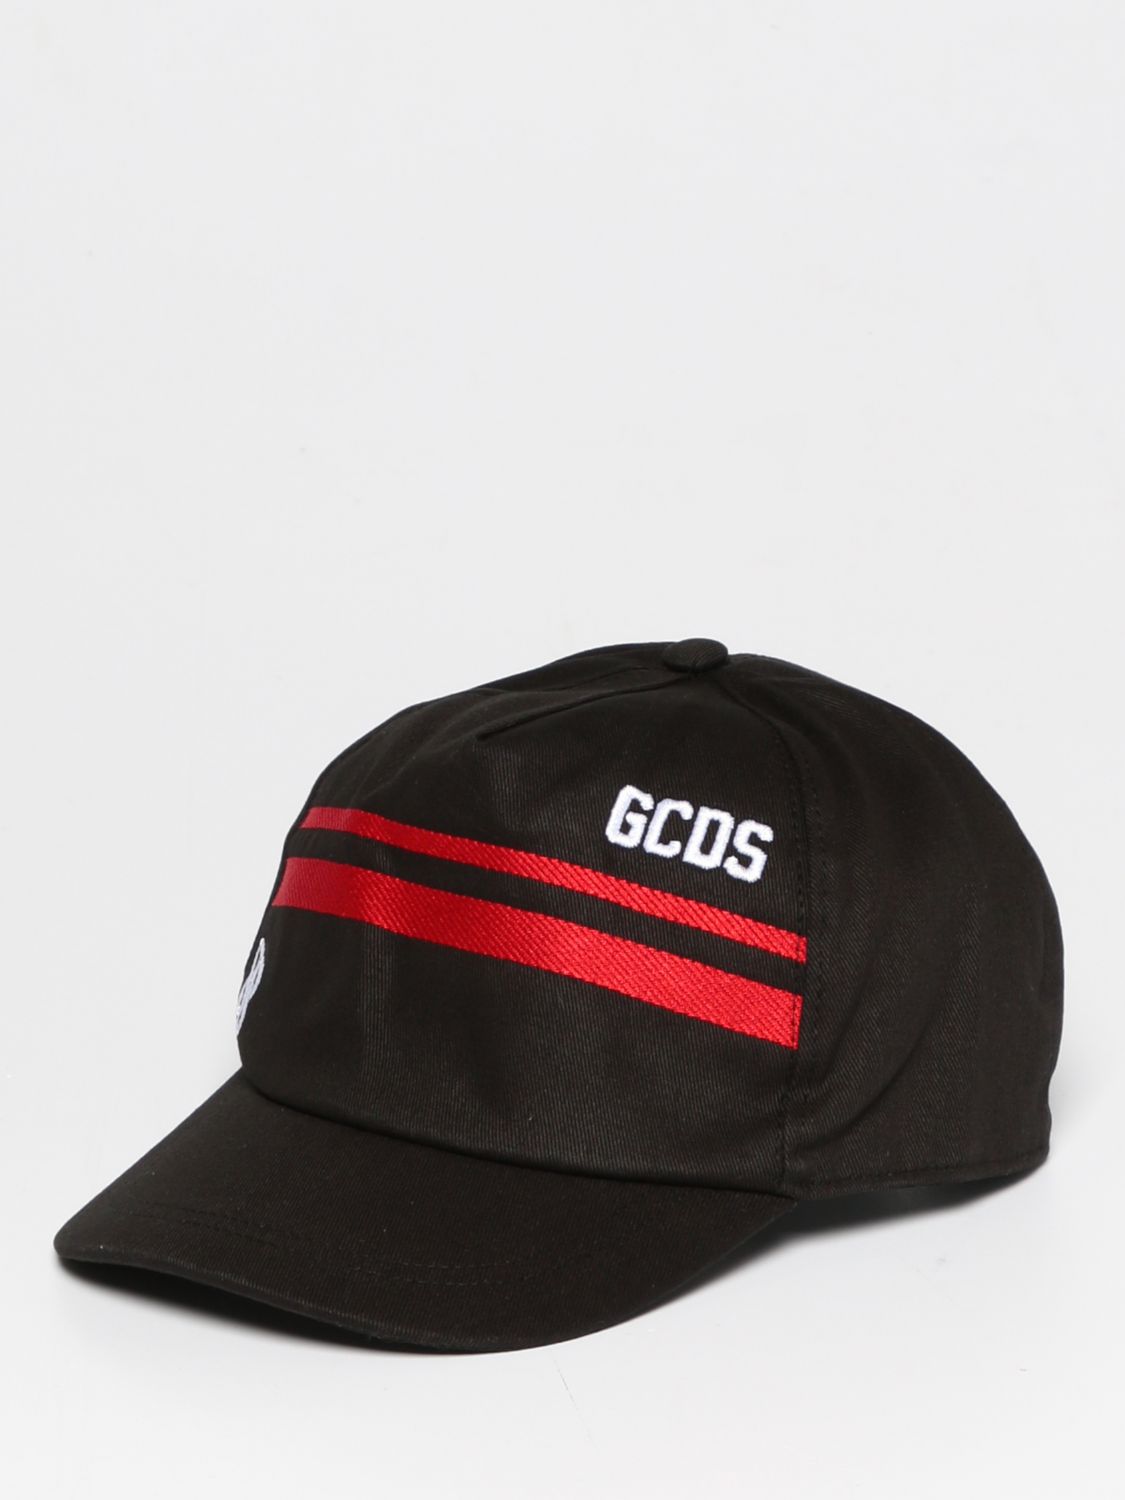 Gcds Hat  Kids Kids Color Black